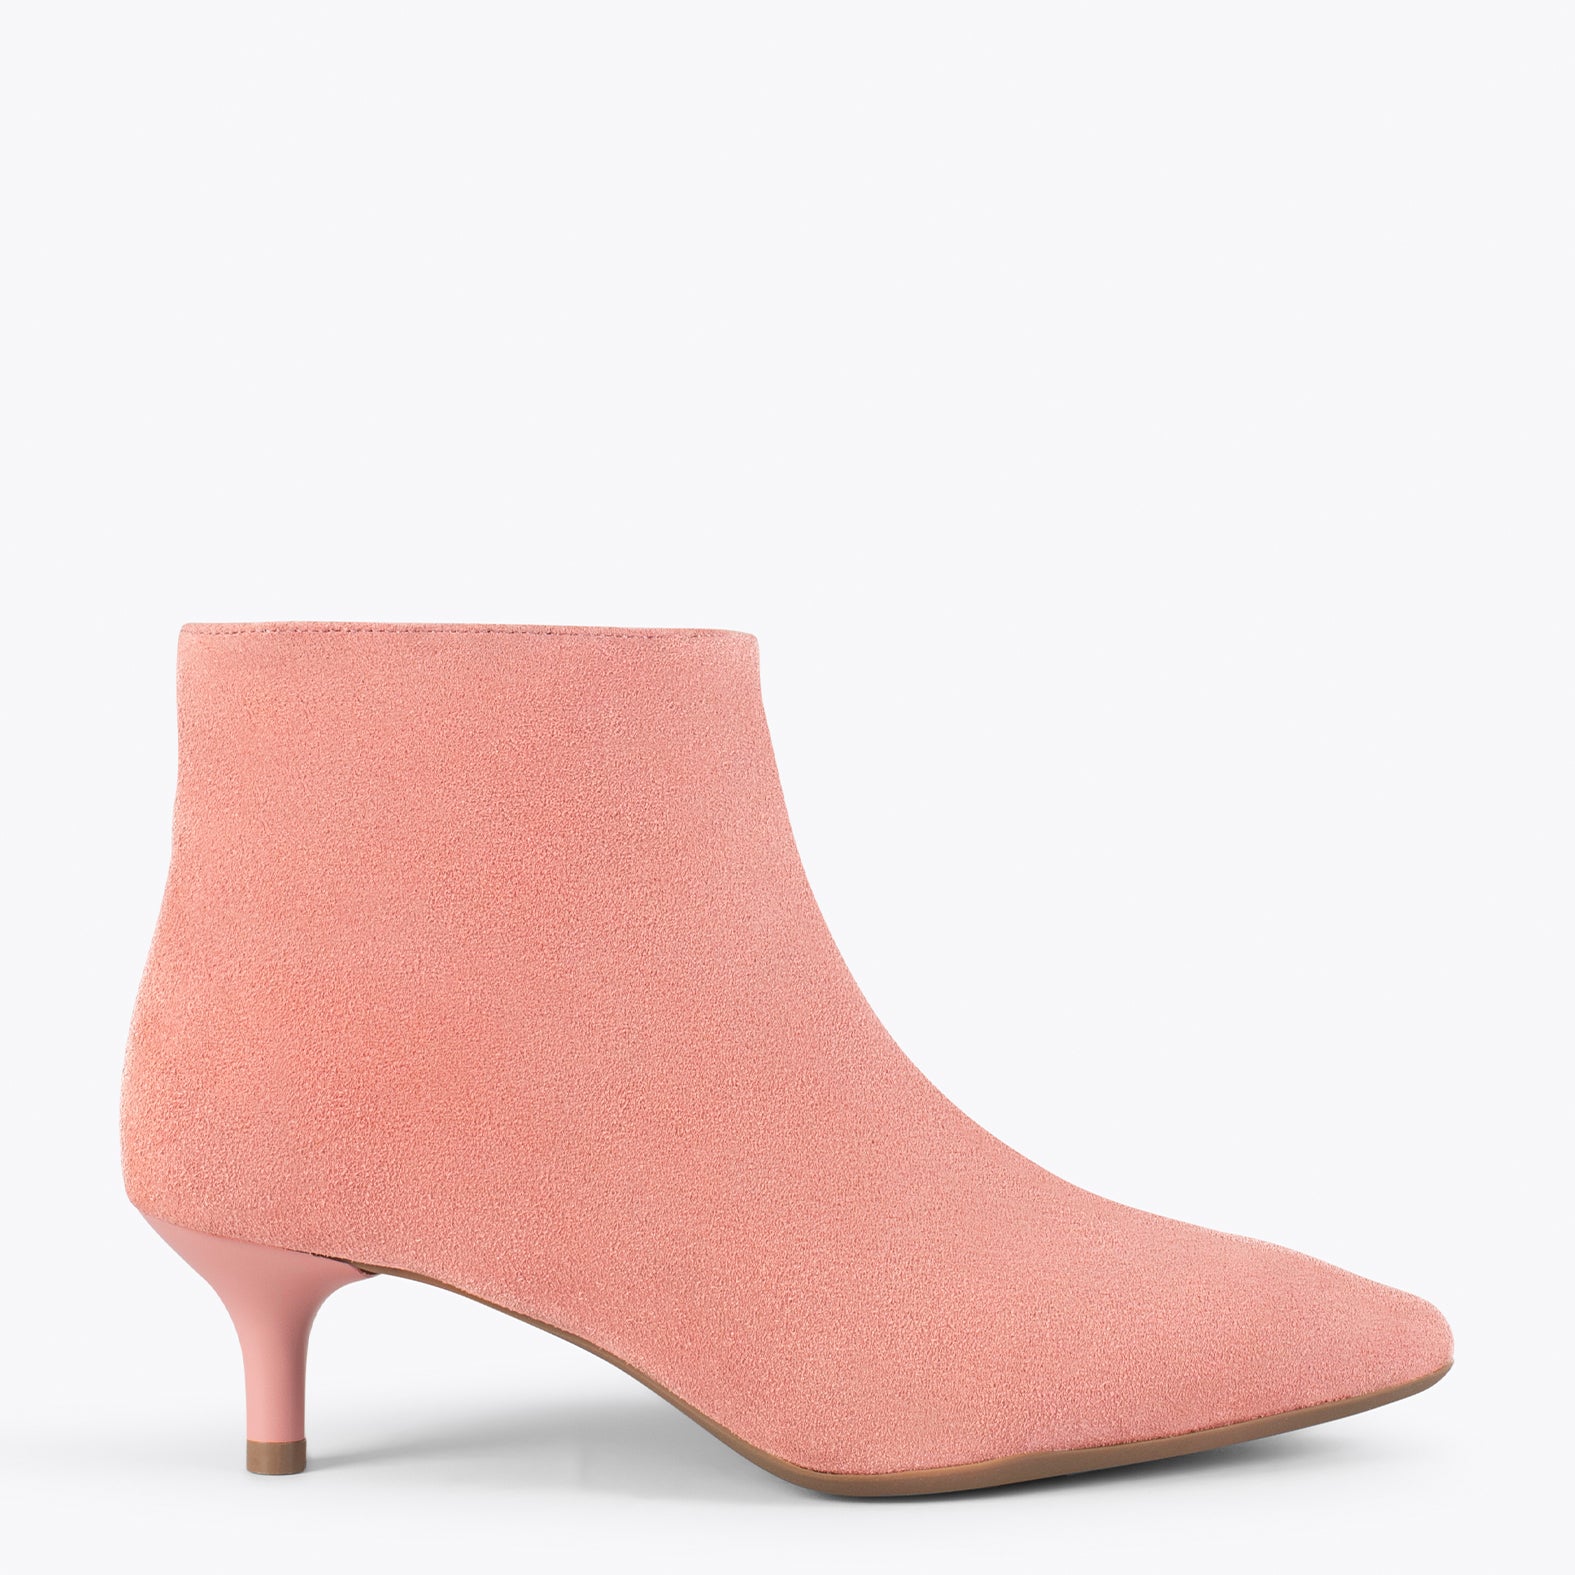 OUTFIT – SALMON elegant low heel booties